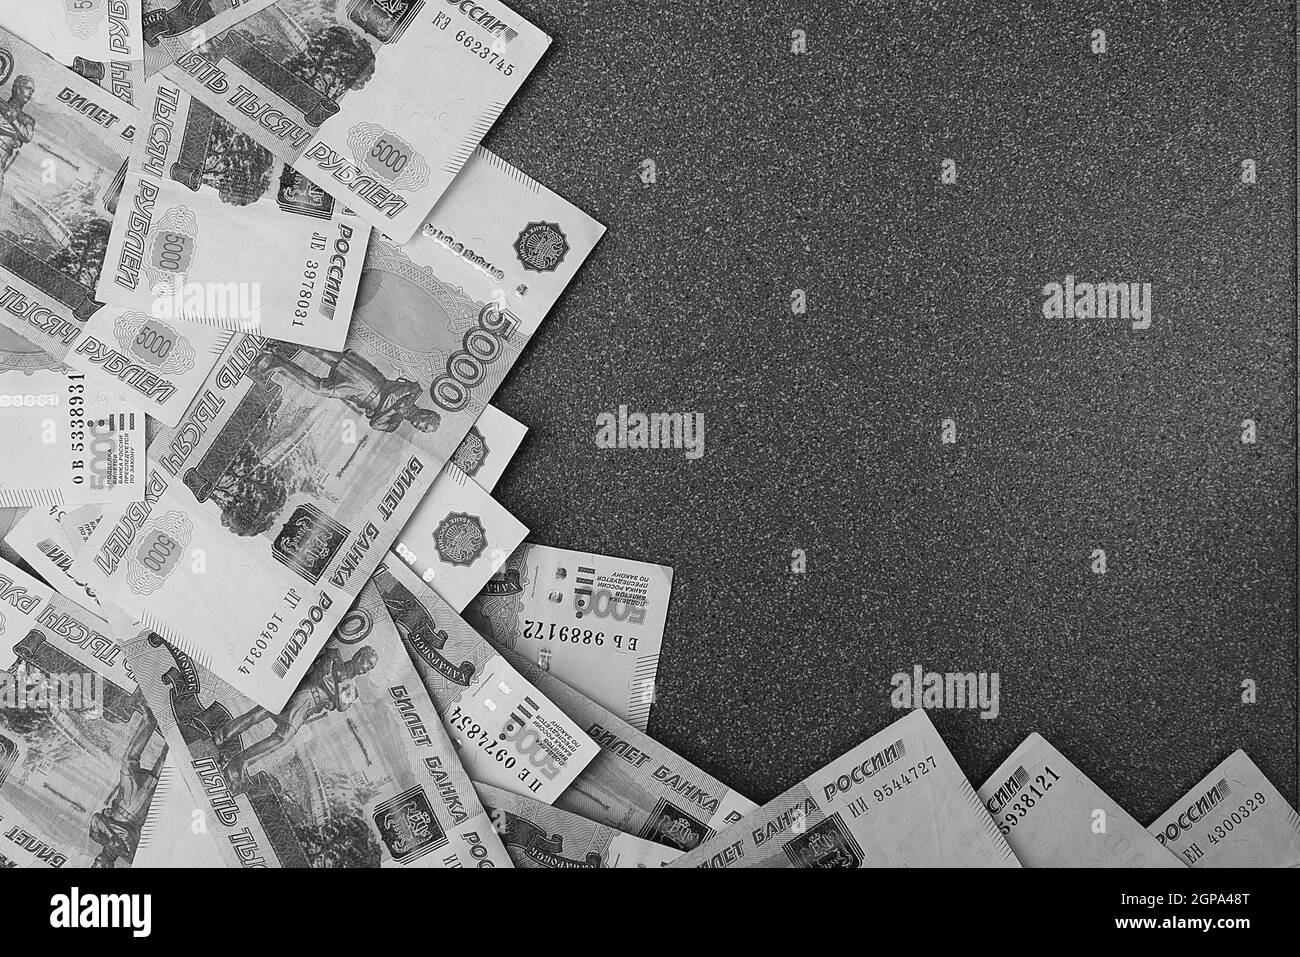 Billets en espèces russes de cinq mille roubles, dispersés sur fond gris, il y a une place pour l'inscription et le texte. Mise en page, mise en page. Banque D'Images